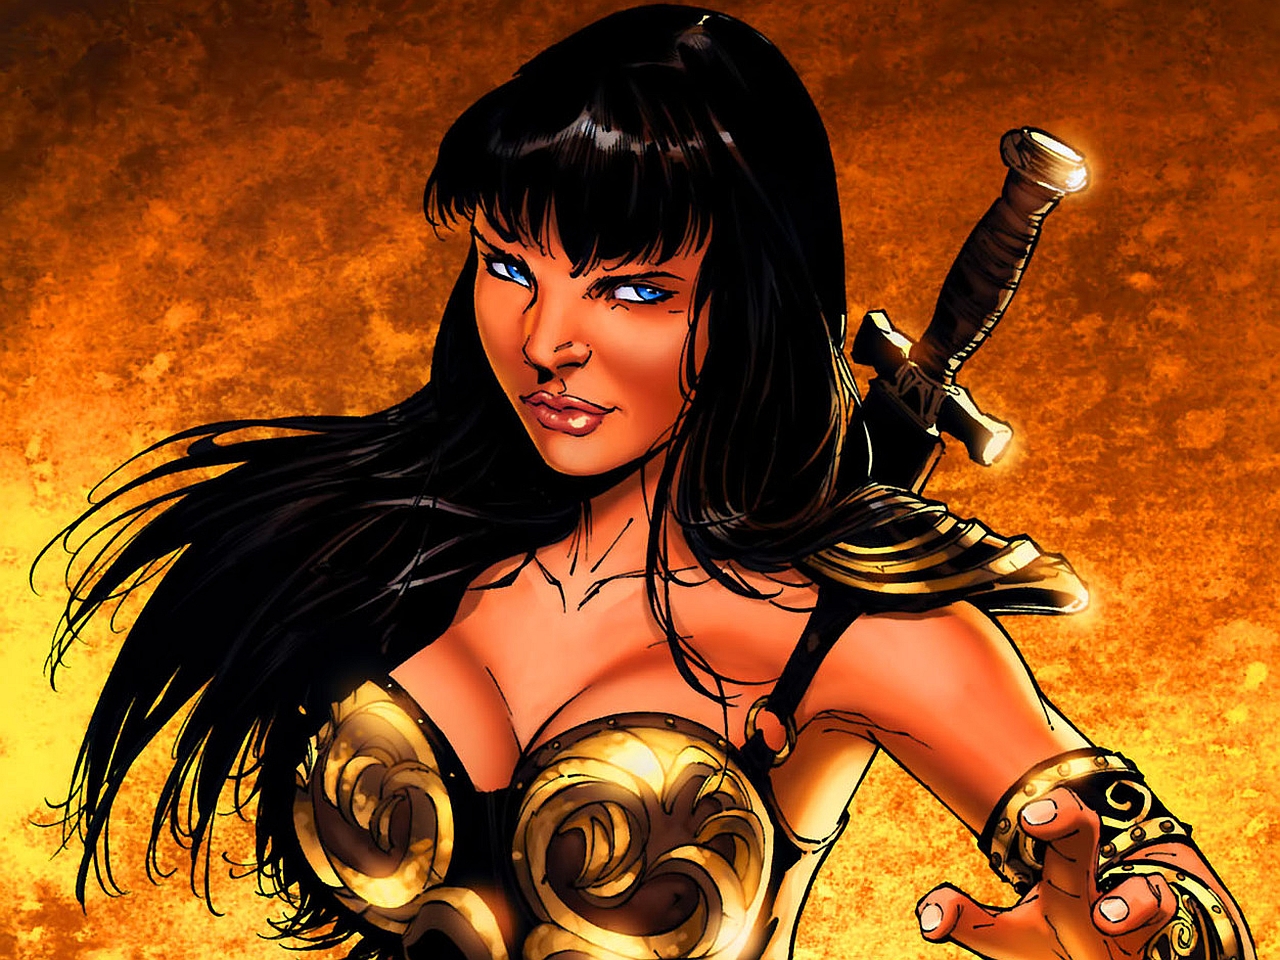 xena: warrior princess, comics